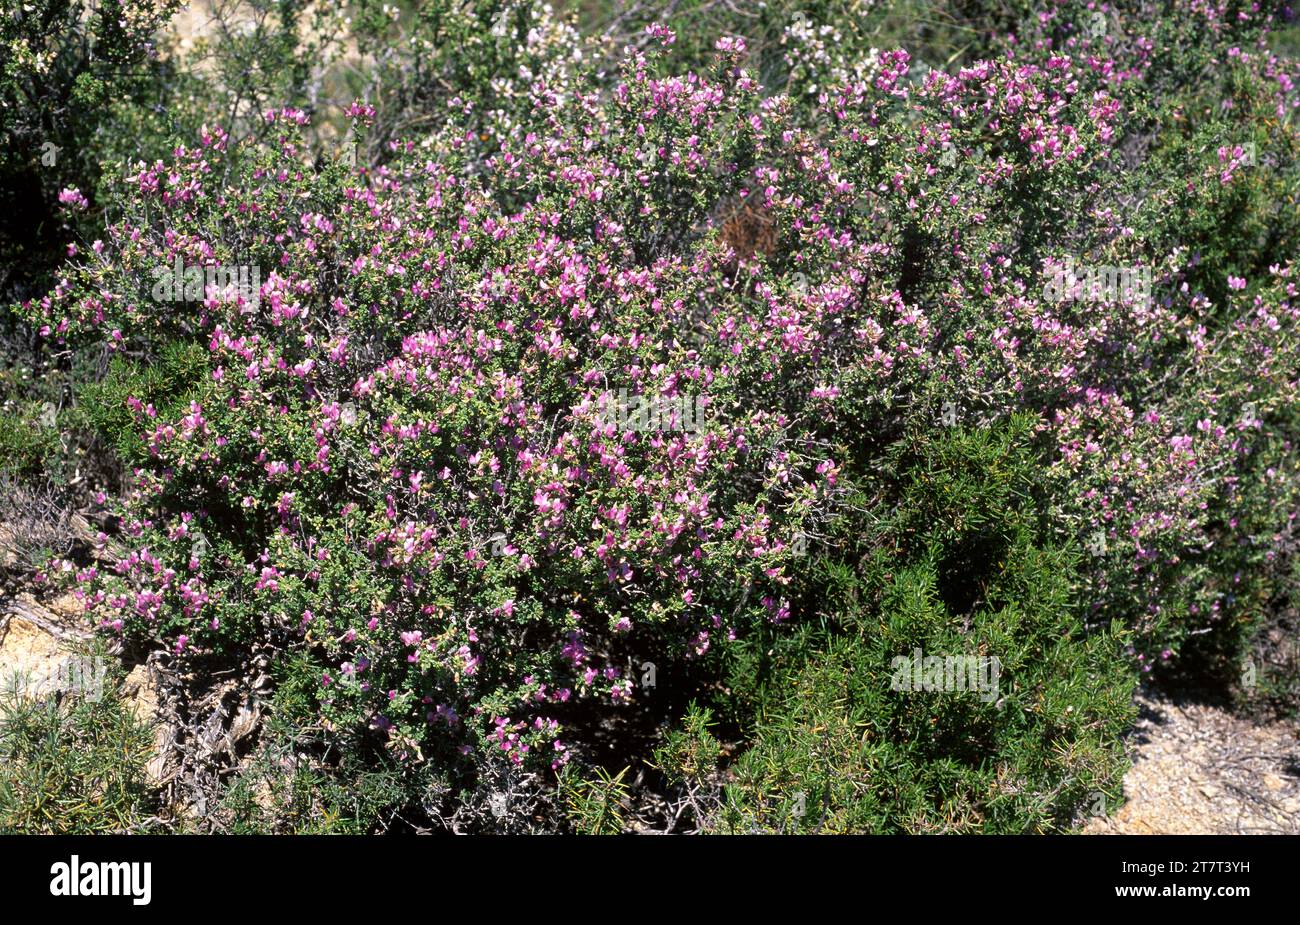 Arnacho (Ononis tridentata) est un arbuste agypsophile originaire de l'est de l'Espagne et du Maroc. Cette photo a été prise à Los Monegros, Huesca, Aragon, Espagne. Banque D'Images